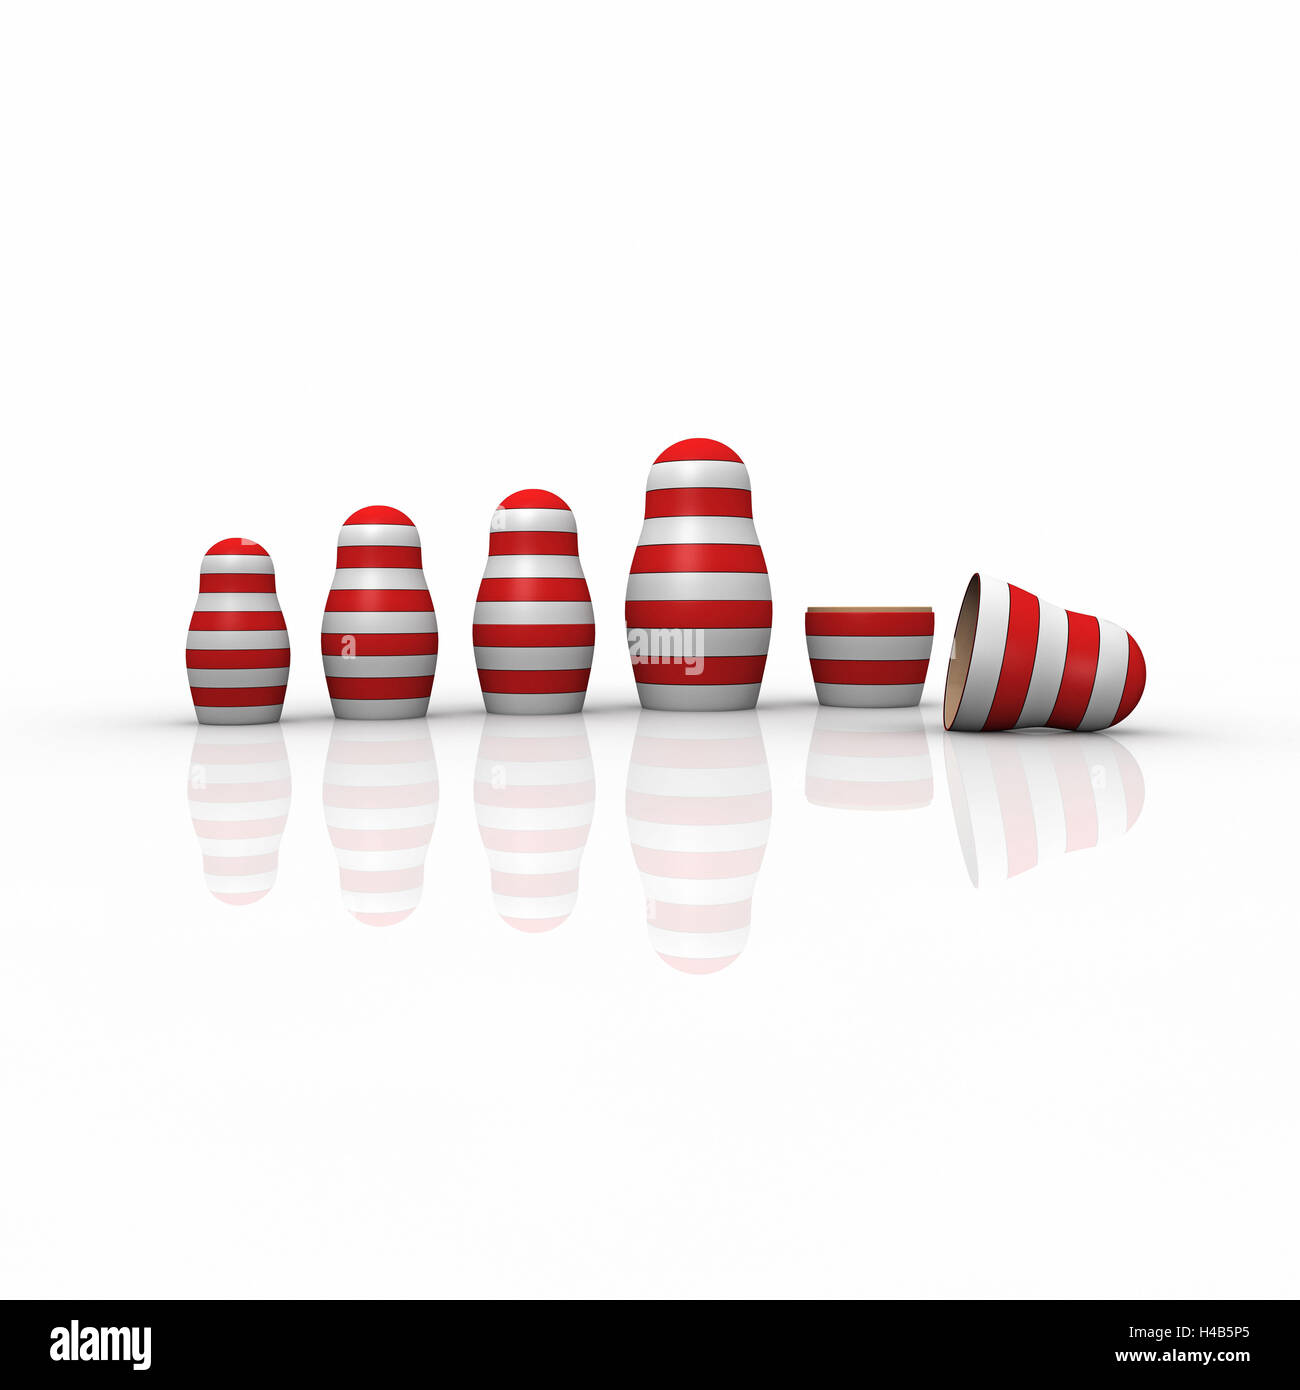 Russische Matroschka Puppen, rot-weiß gestreift, Hintergrund weiß, Stockfoto